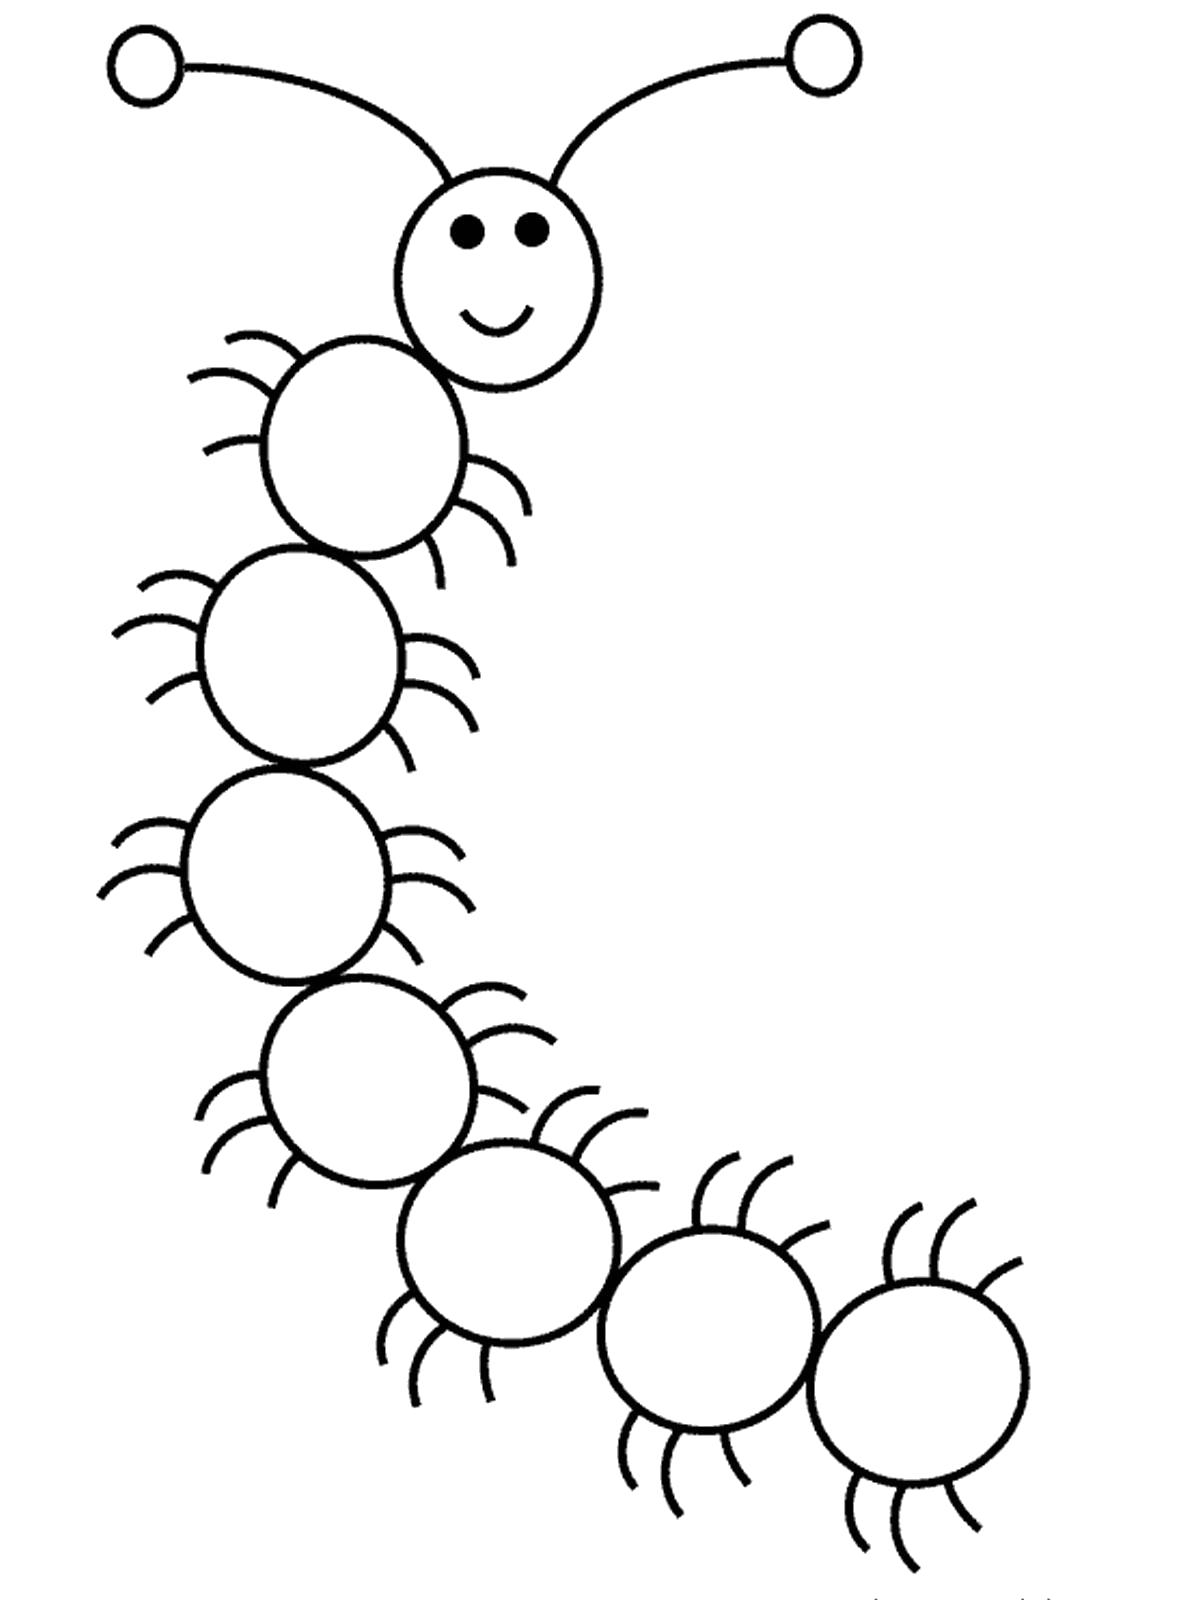 Название: Раскраска гусеница из кругов. Категория: геометрические фигуры. Теги: круг.